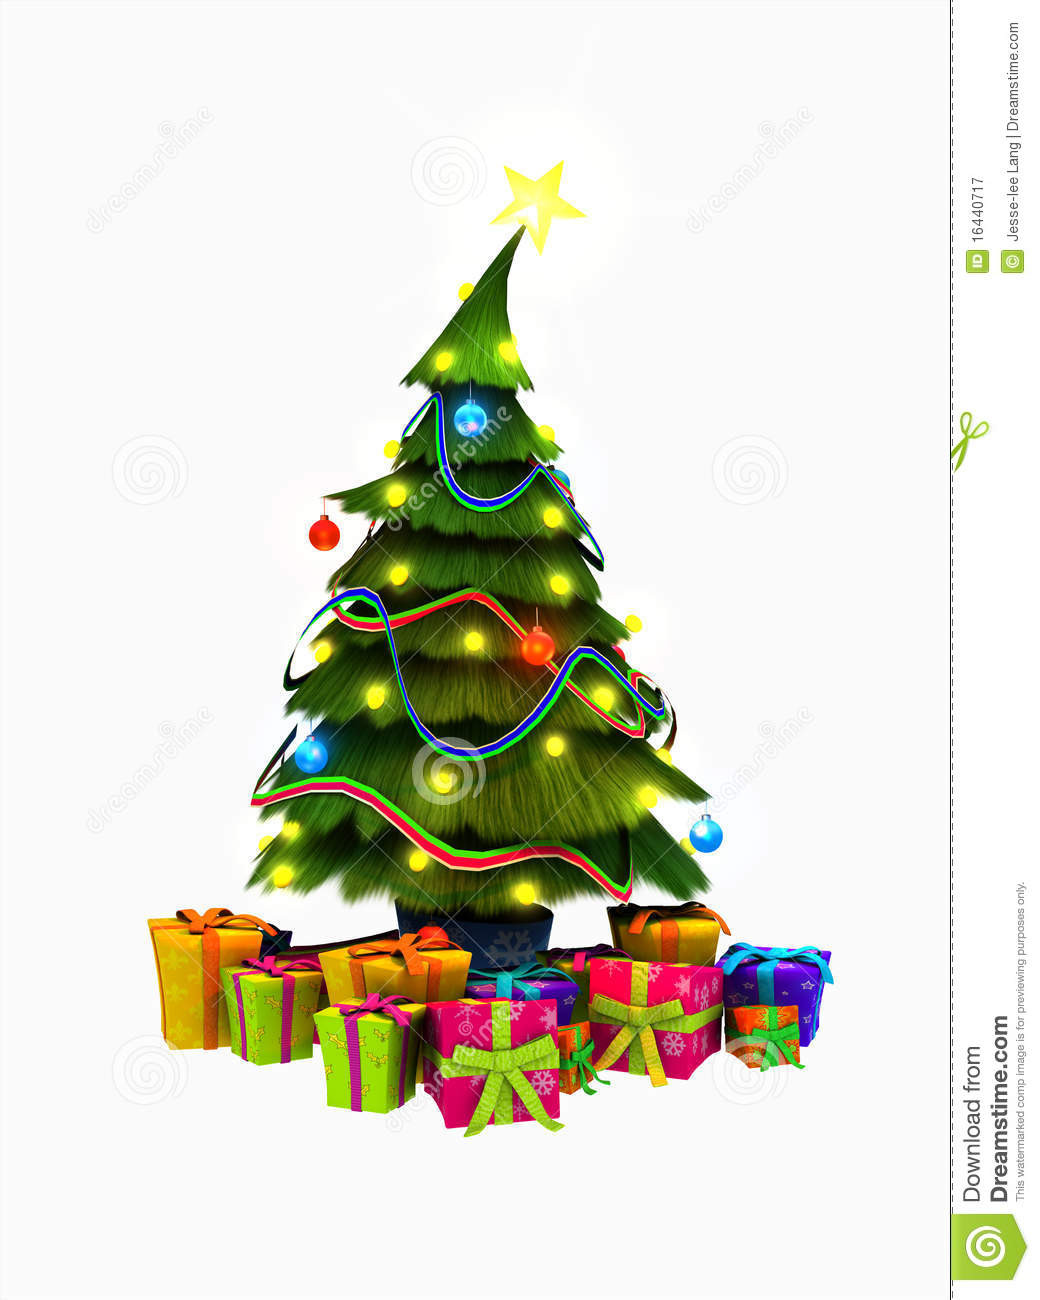 Weihnachtsbaum Geschenke
 Weihnachtsbaum Und Geschenke Stock Abbildung